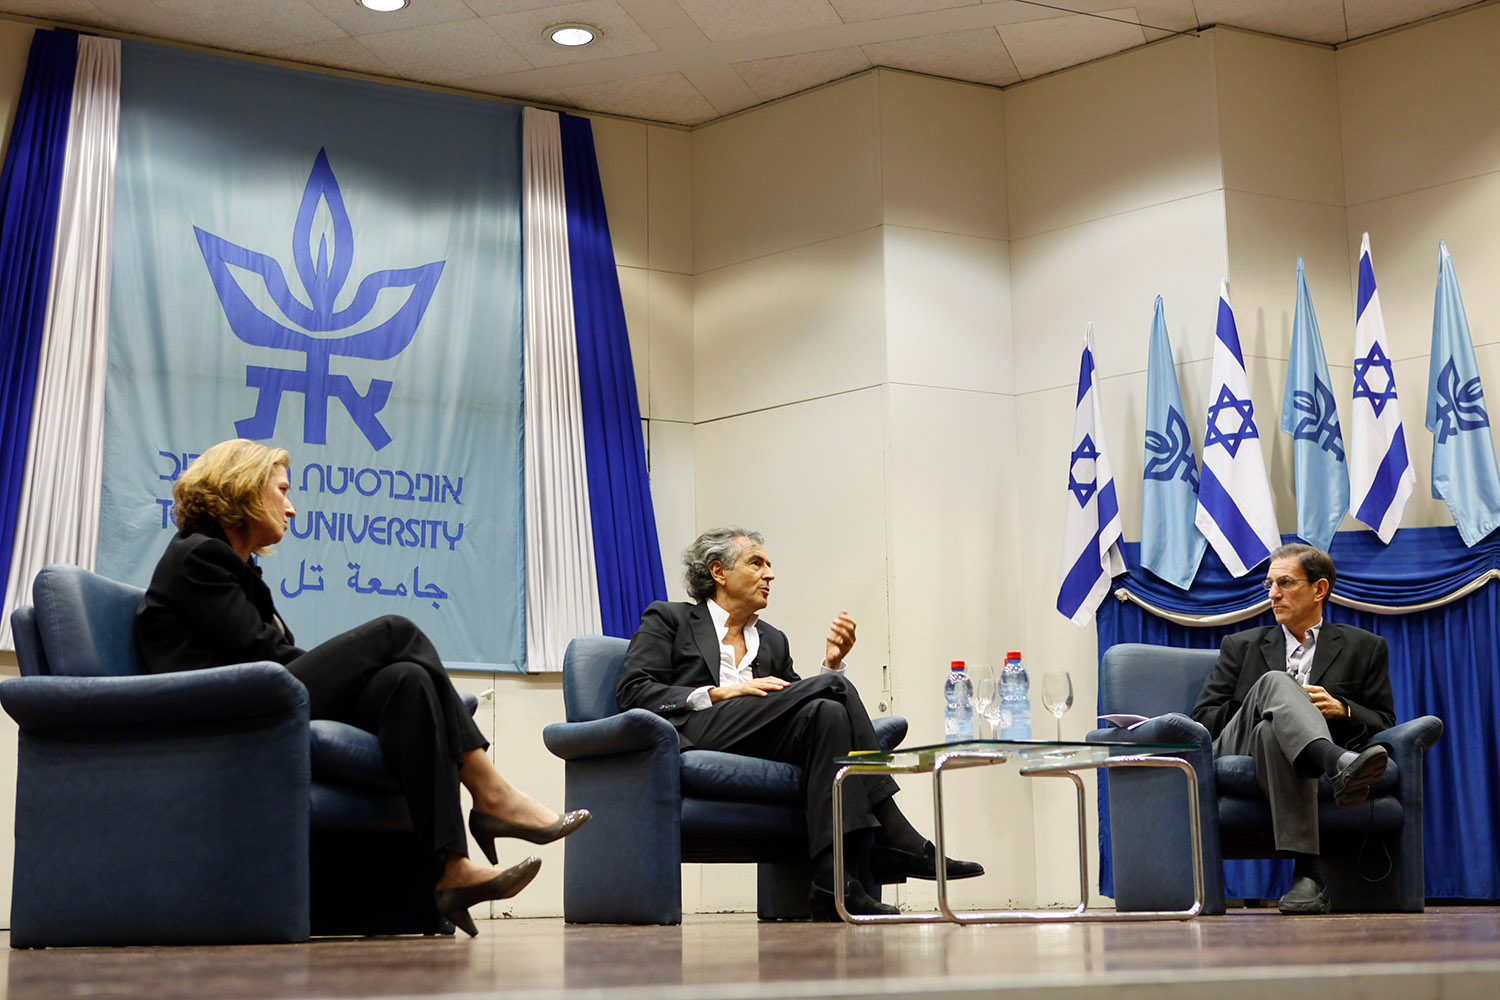 Bernard-Henri Lévy à l'Université de Tel-Aviv. Un homme et une femme sont assis dans des fauteuils à sa droite et à sa gauche. Il y a des drapeaux de l'Université et de l'état d'Israël pendus aux murs.